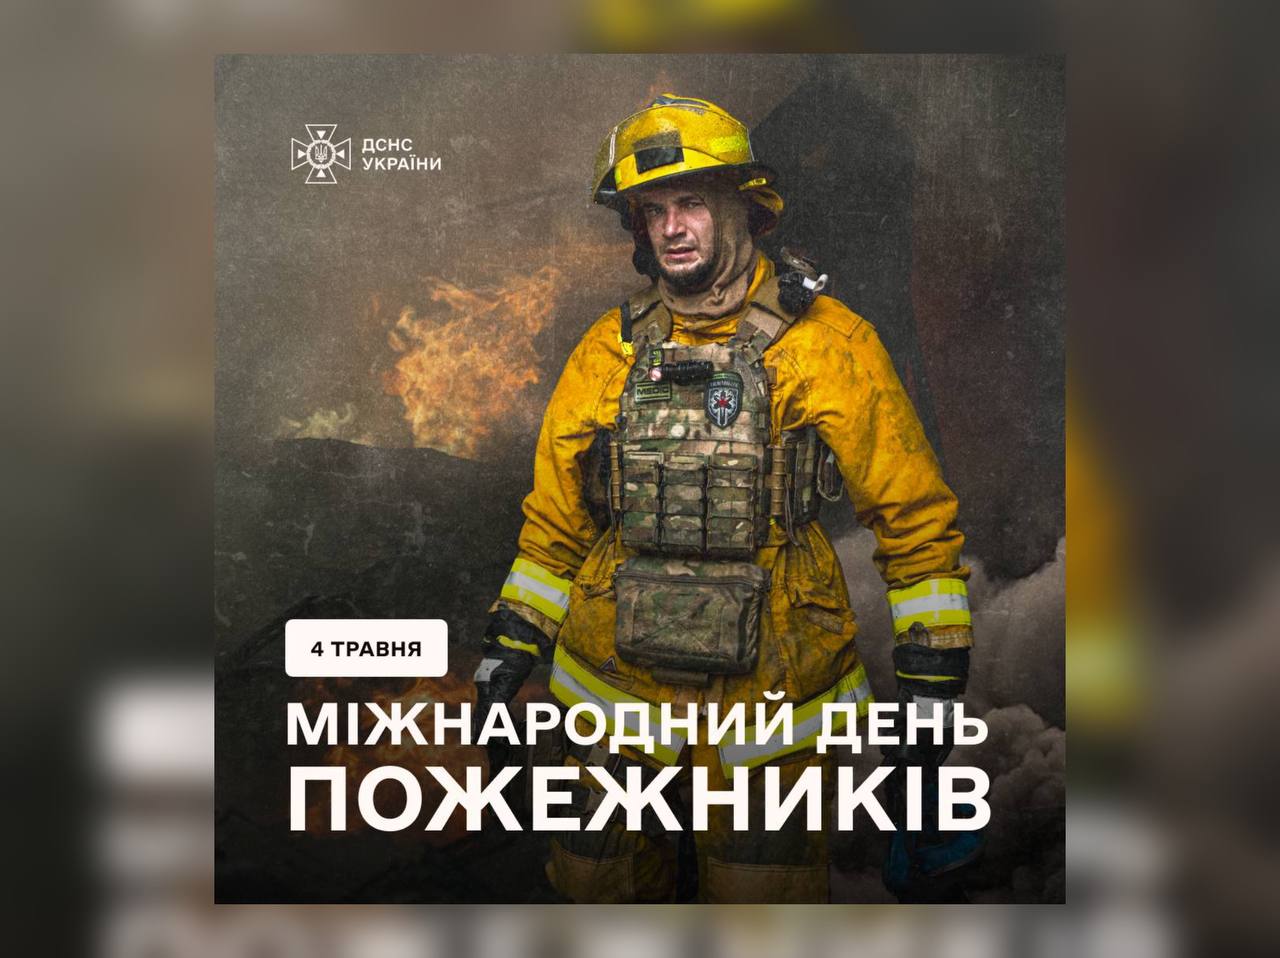 Сьогодні — Міднародний день пожежників